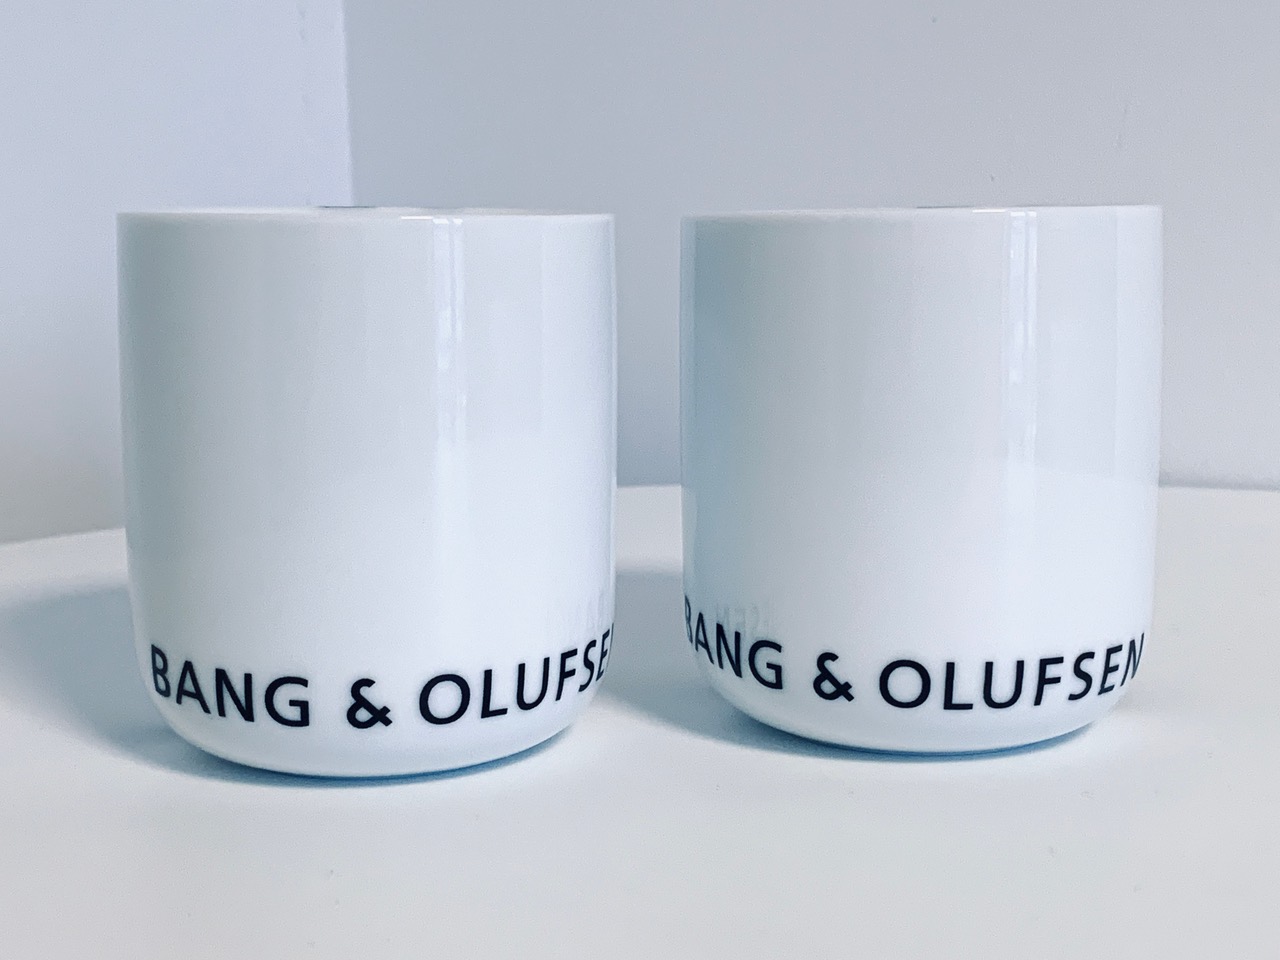 Immagine delle tazze Menu Bang & Olufsen nuove nella confezione offerta in questo annuncio.